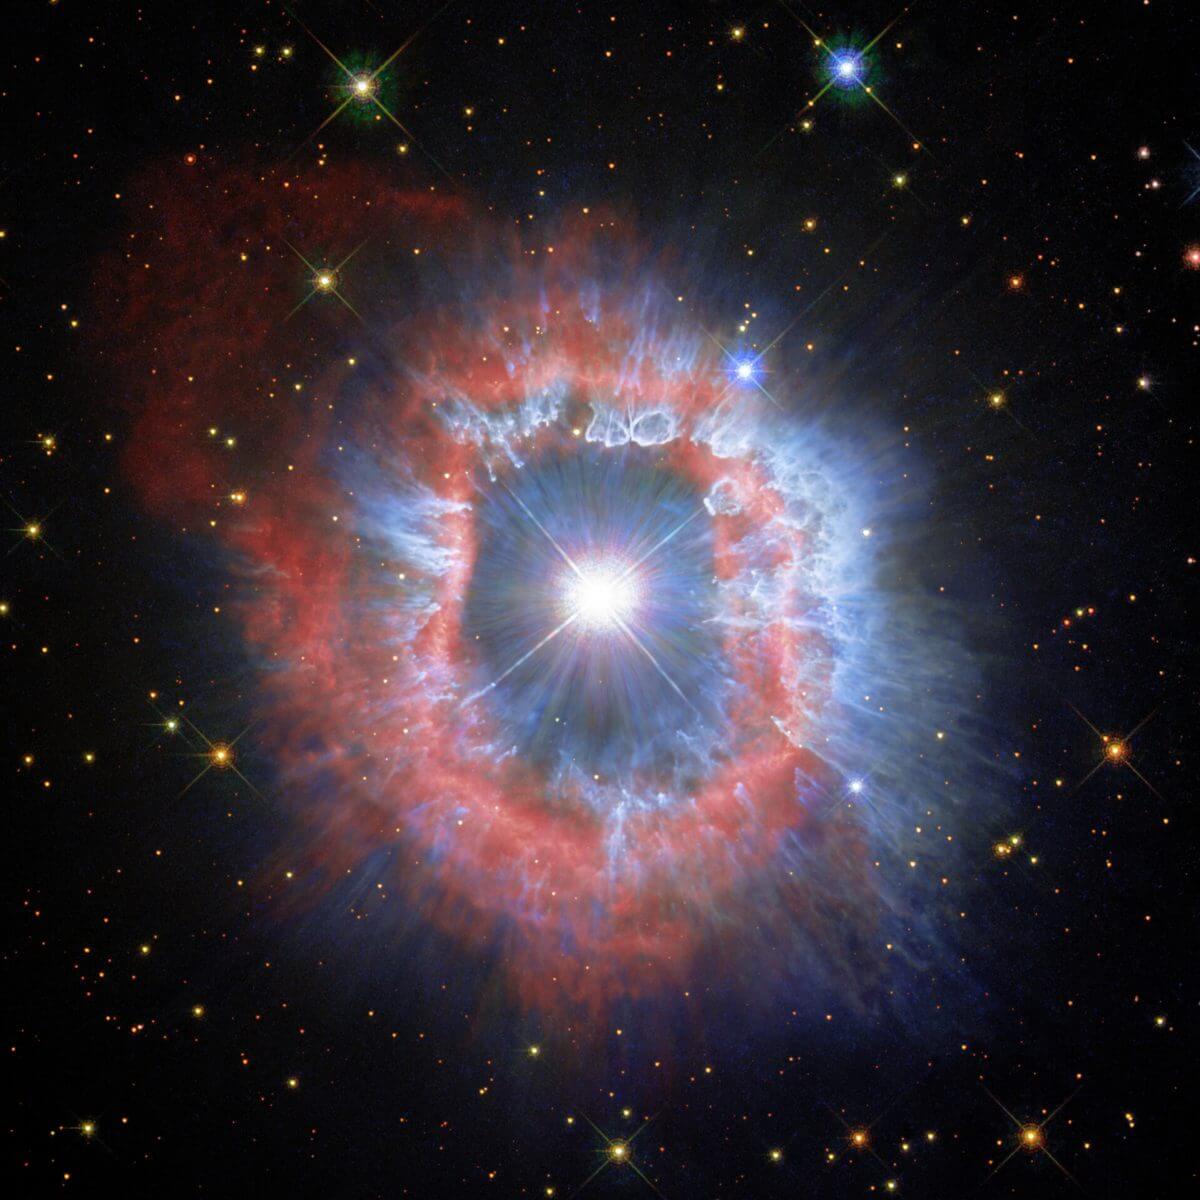 りゅうこつ座AG星と周囲に広がる星雲。赤はイオン化した水素・窒素ガス、青は塵の分布に対応する（Credit: ESA/Hubble and NASA, A. Nota, C. Britt）